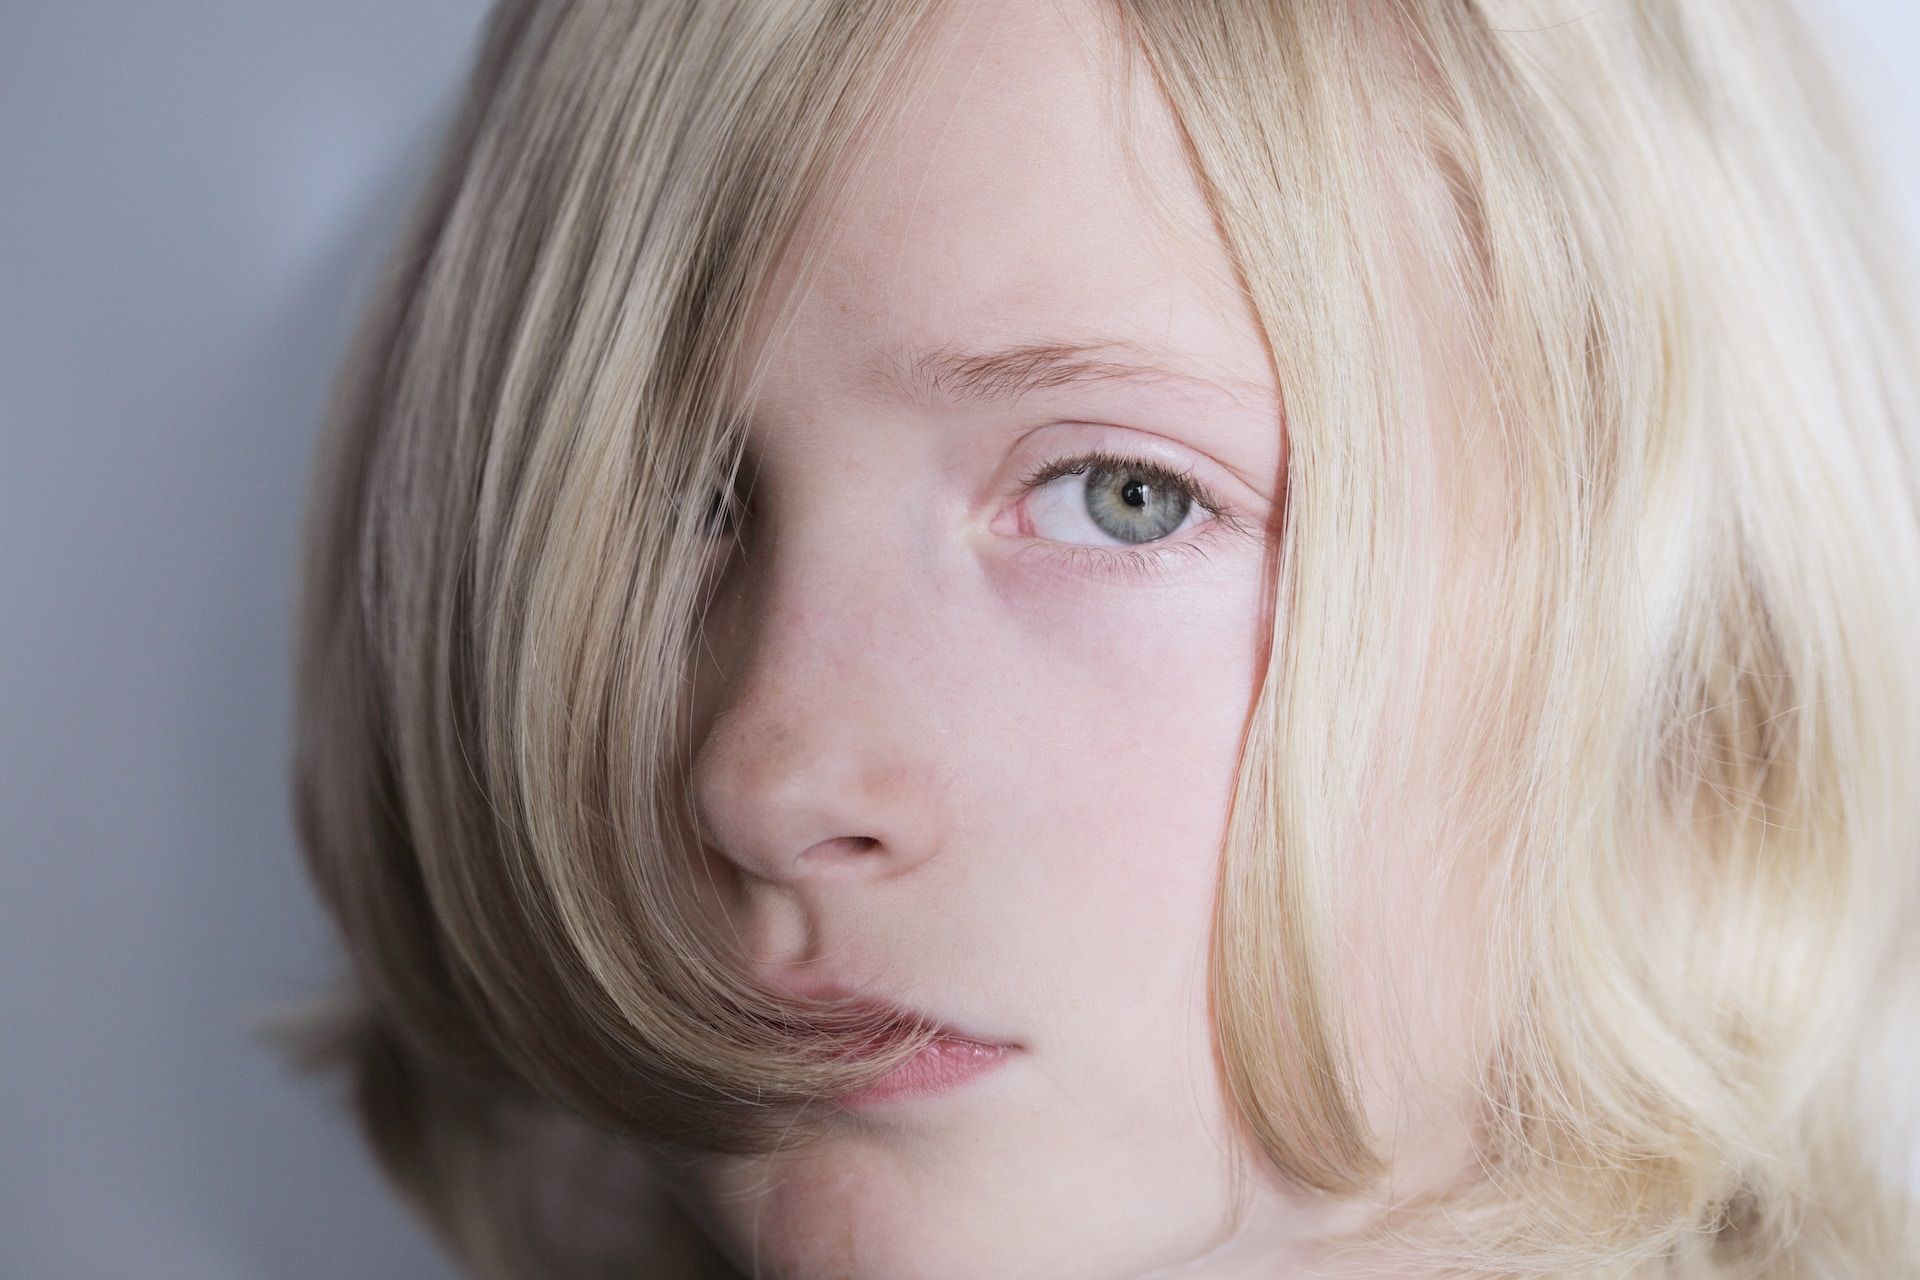 visage d'une personne blonde aux yeux bleus - Photo de Alexander Grey sur https://unsplash.com/fr/photos/YIjgPO1nLmY